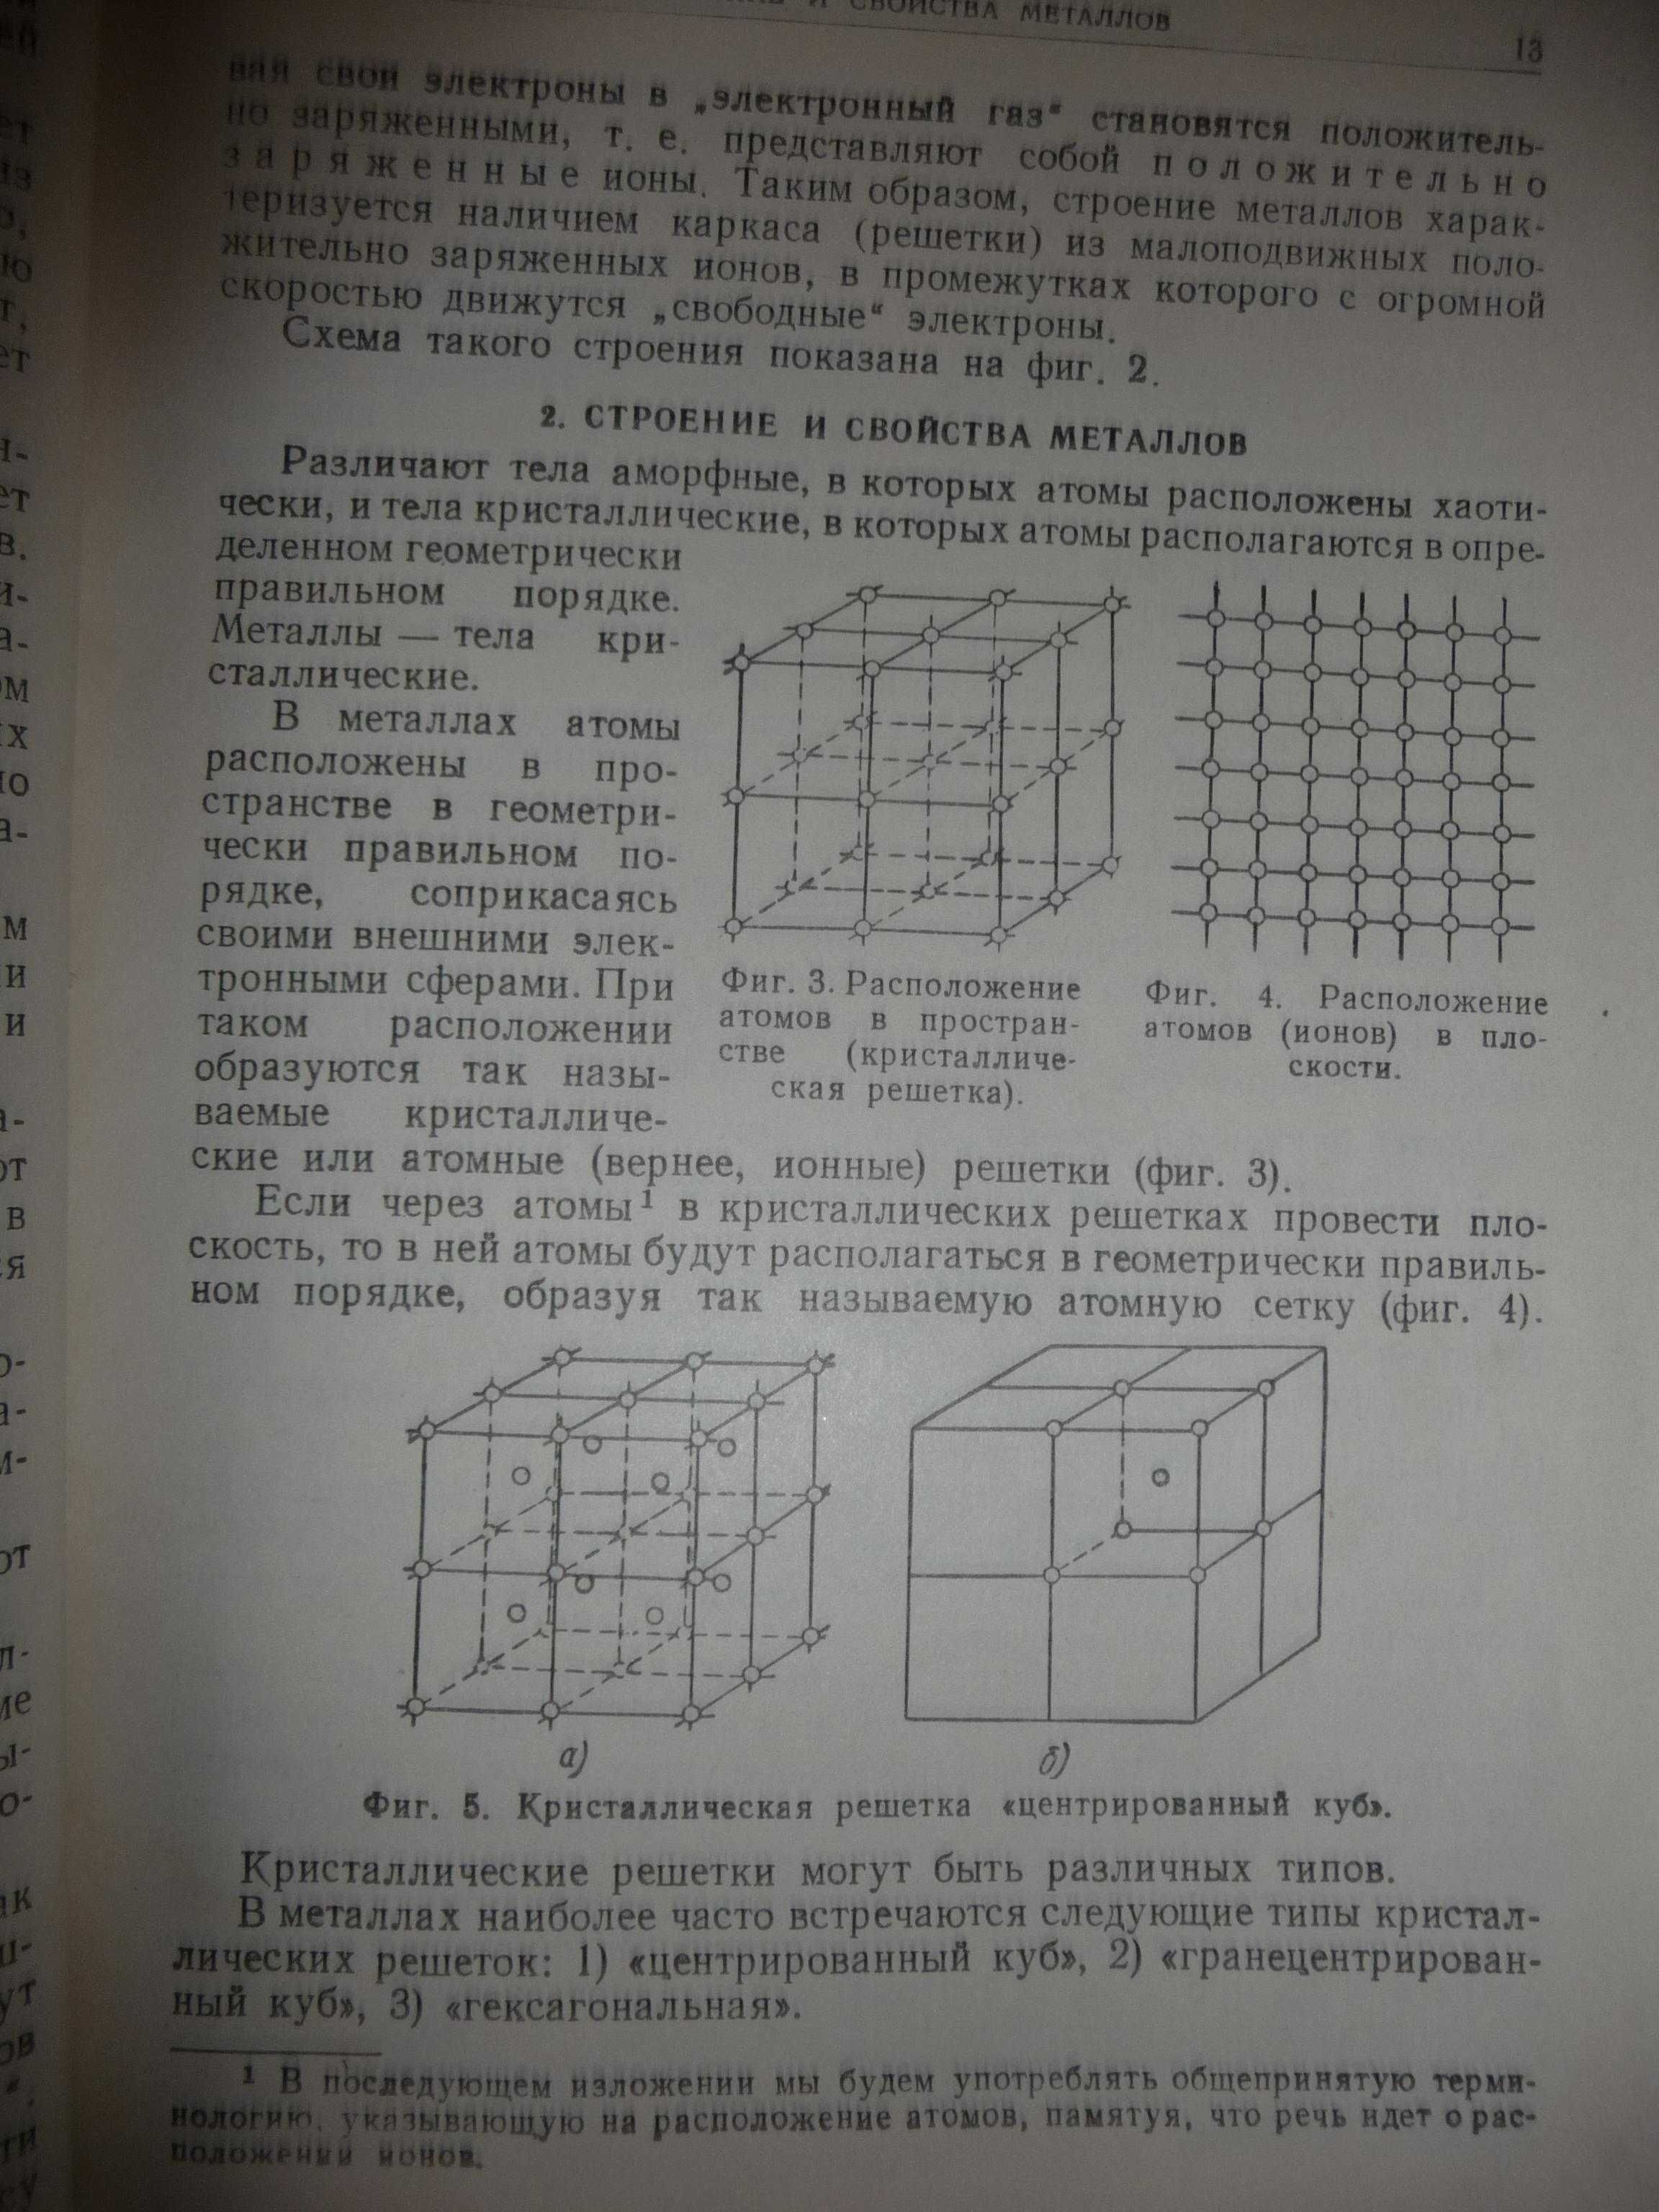 А.И. Самохоцкий "Металловедение" 1952 г. книга букинистическая